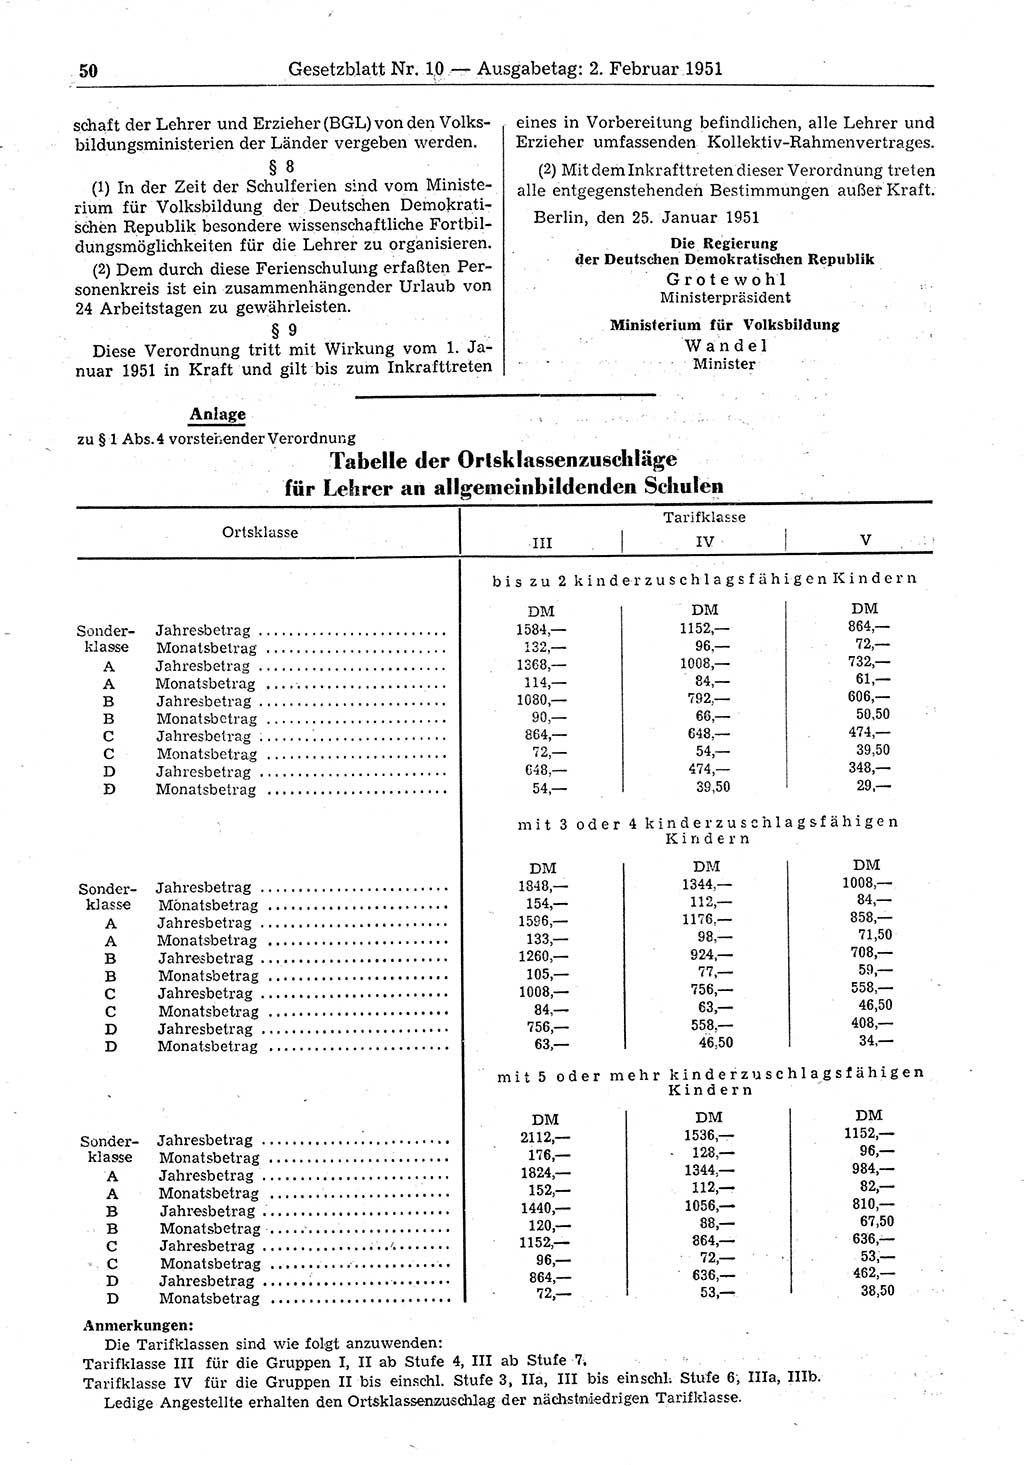 Gesetzblatt (GBl.) der Deutschen Demokratischen Republik (DDR) 1951, Seite 50 (GBl. DDR 1951, S. 50)